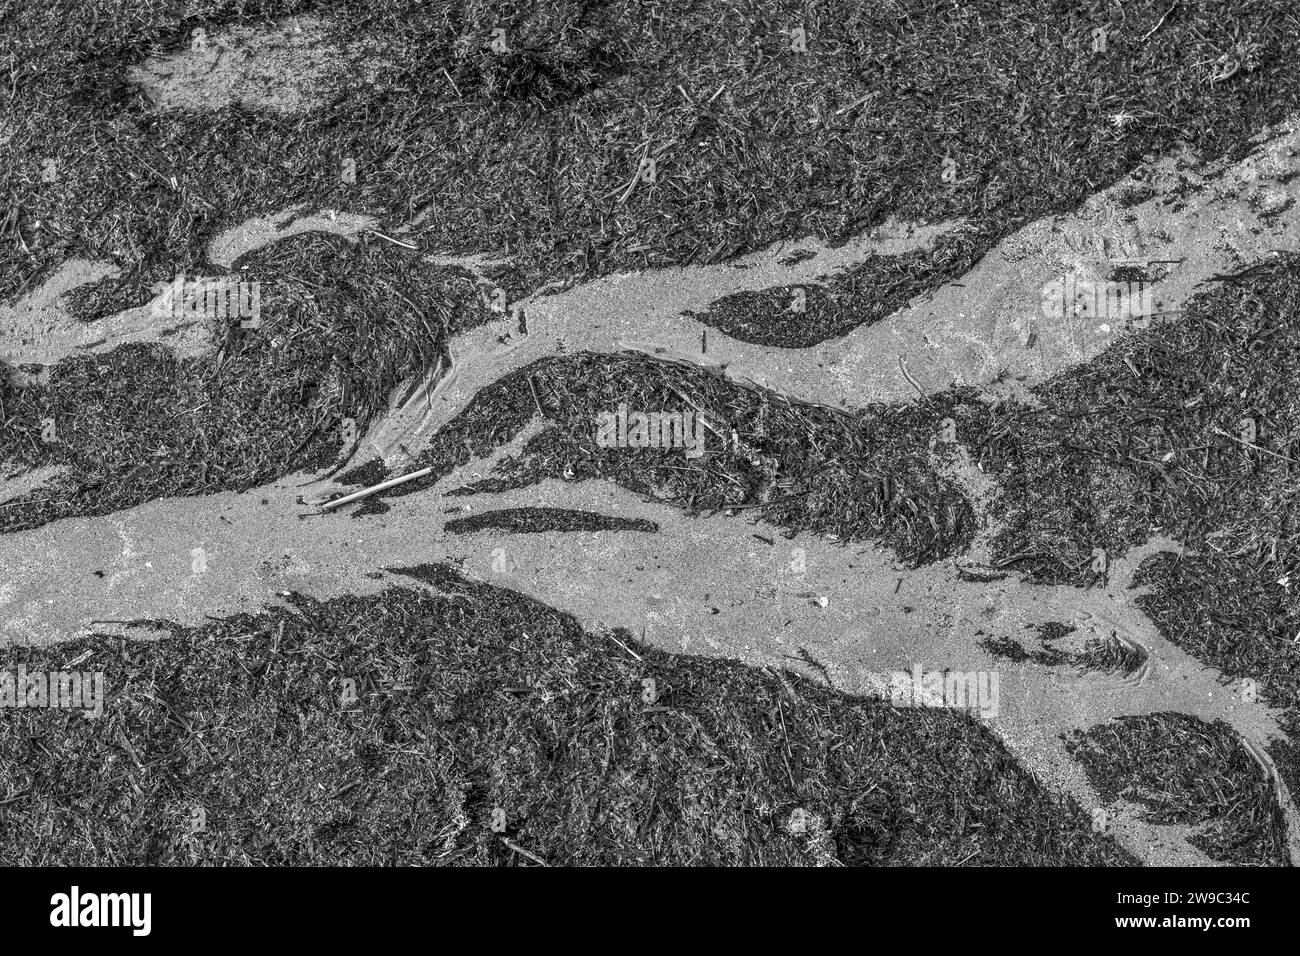 Algues lavées à terre par la mer après une tempête ; photo en noir et blanc prise d'en haut ressemblant à une rivière. Plage de Grado, Italie. Banque D'Images